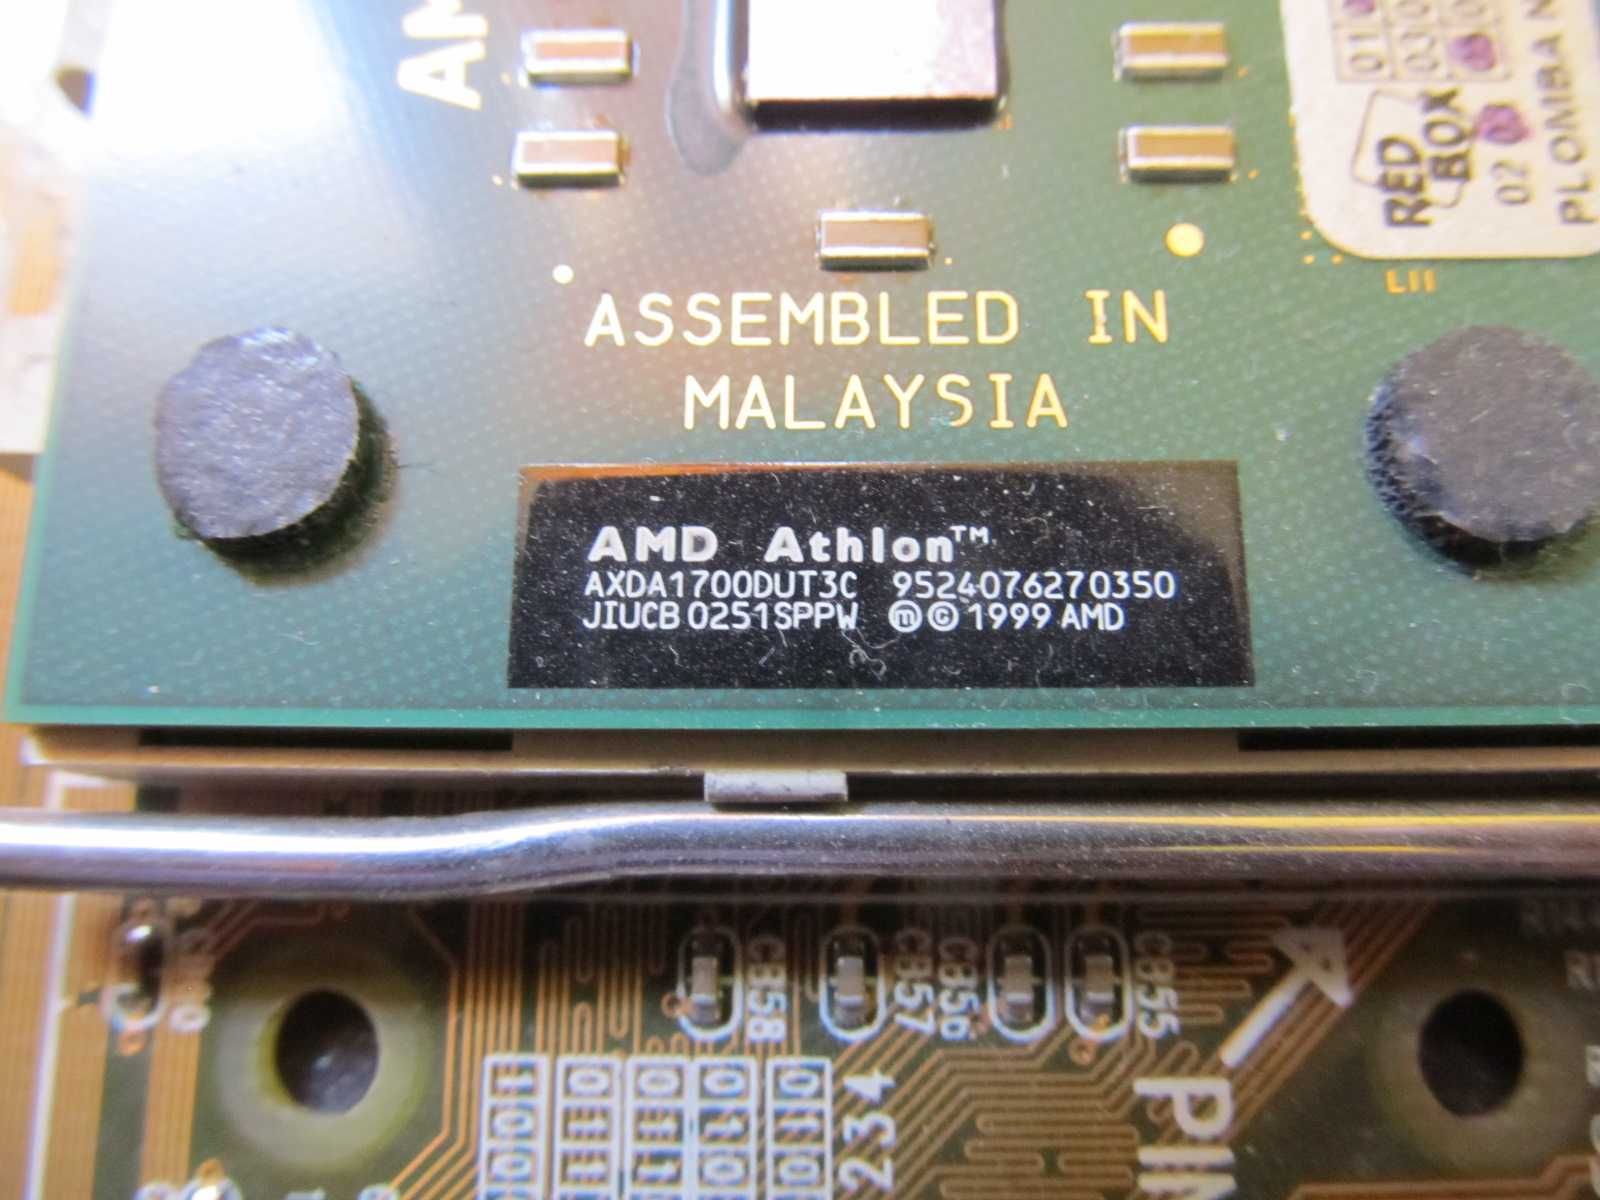 amd athlon axda1700dut3c socket A (Socket 462)